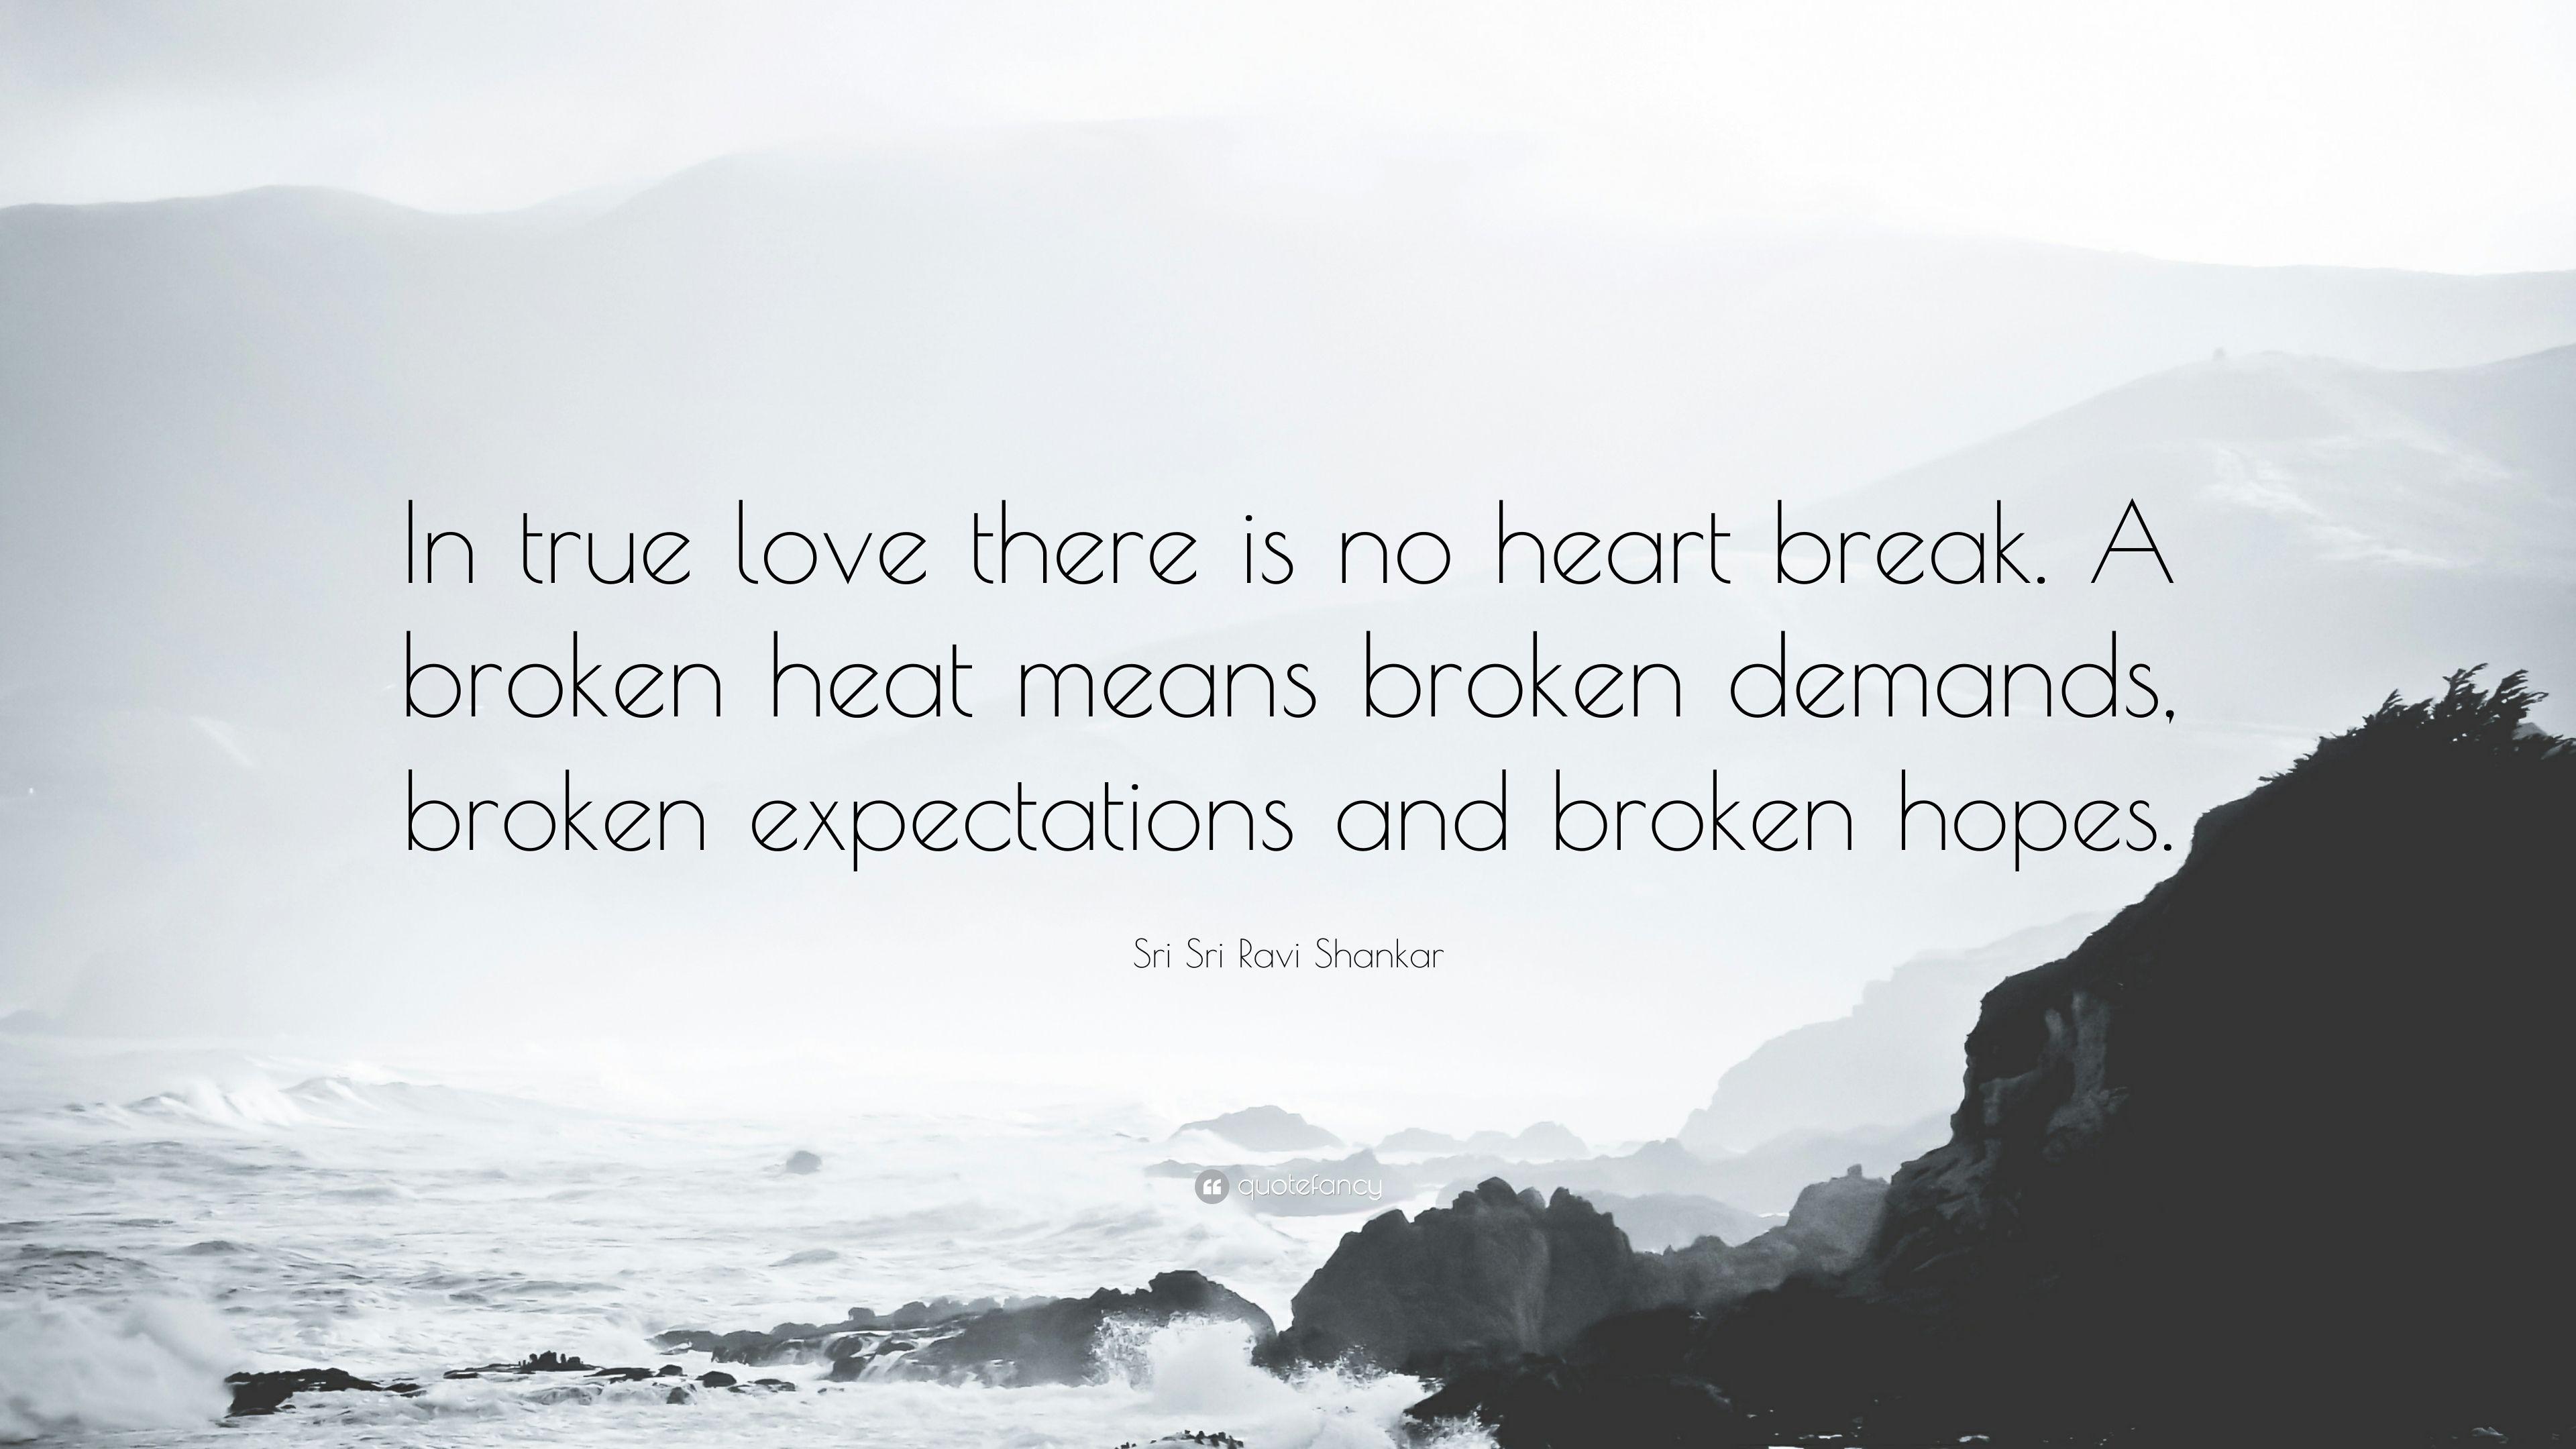 Sri Sri Ravi Shankar Quote: “In true love there is no heart break. A